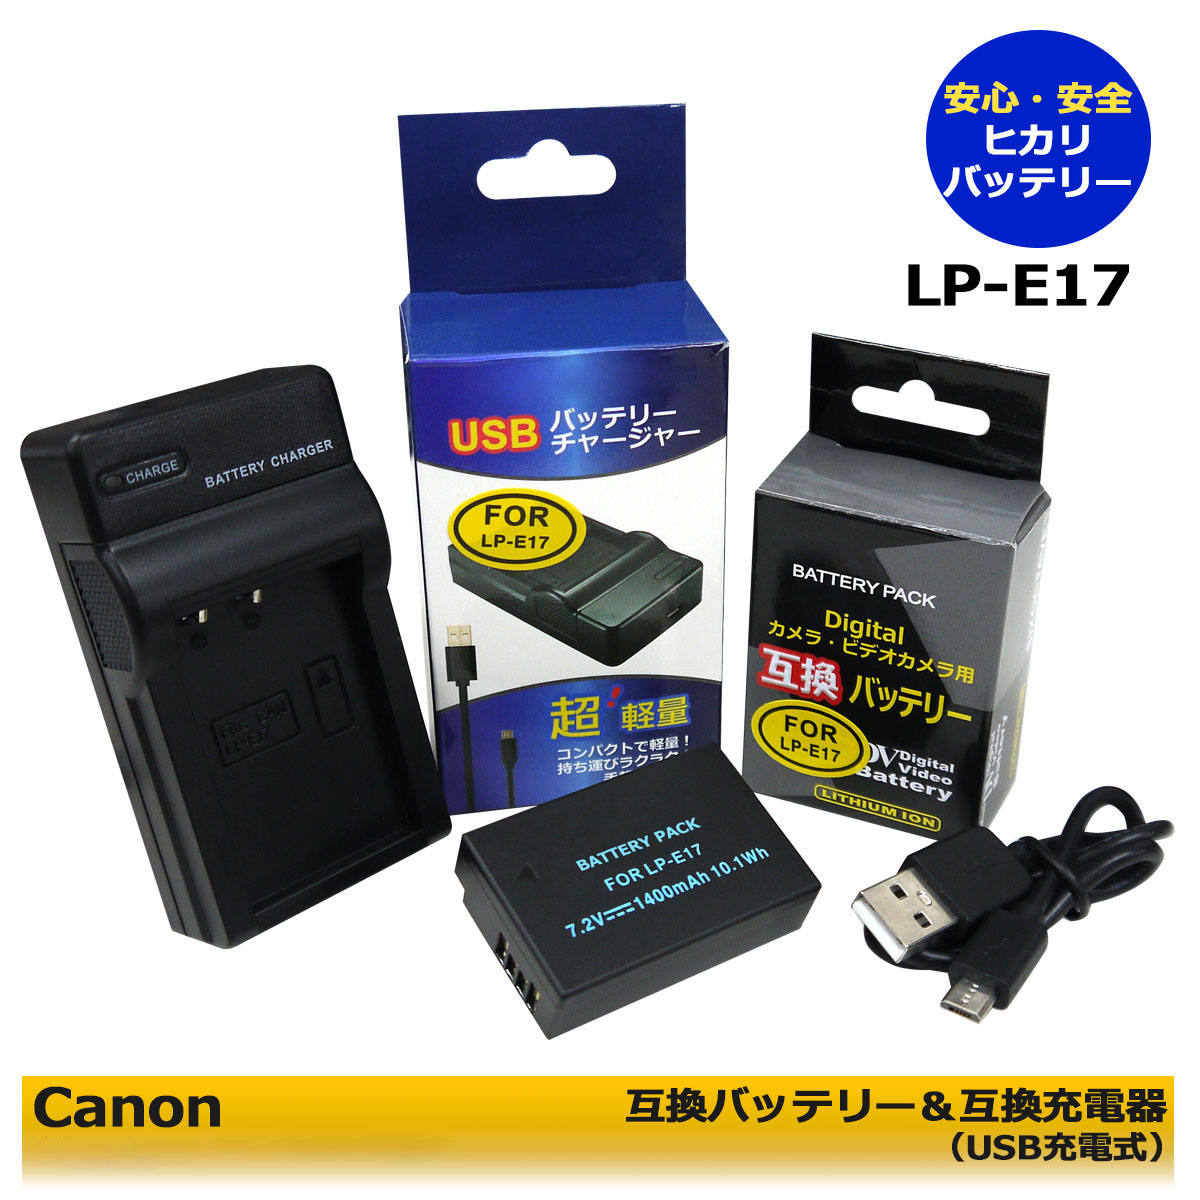 あす楽対応 海外 キャノン Canon LP-E17 互換バッテリー1個 と 互換USB充電器 LC-E17 の２点セット EOS RP M3 M5 Mark 8000D 750D 9000D Kiss 200D X8i 77D M6 早い者勝ち 800D II 760D X10i